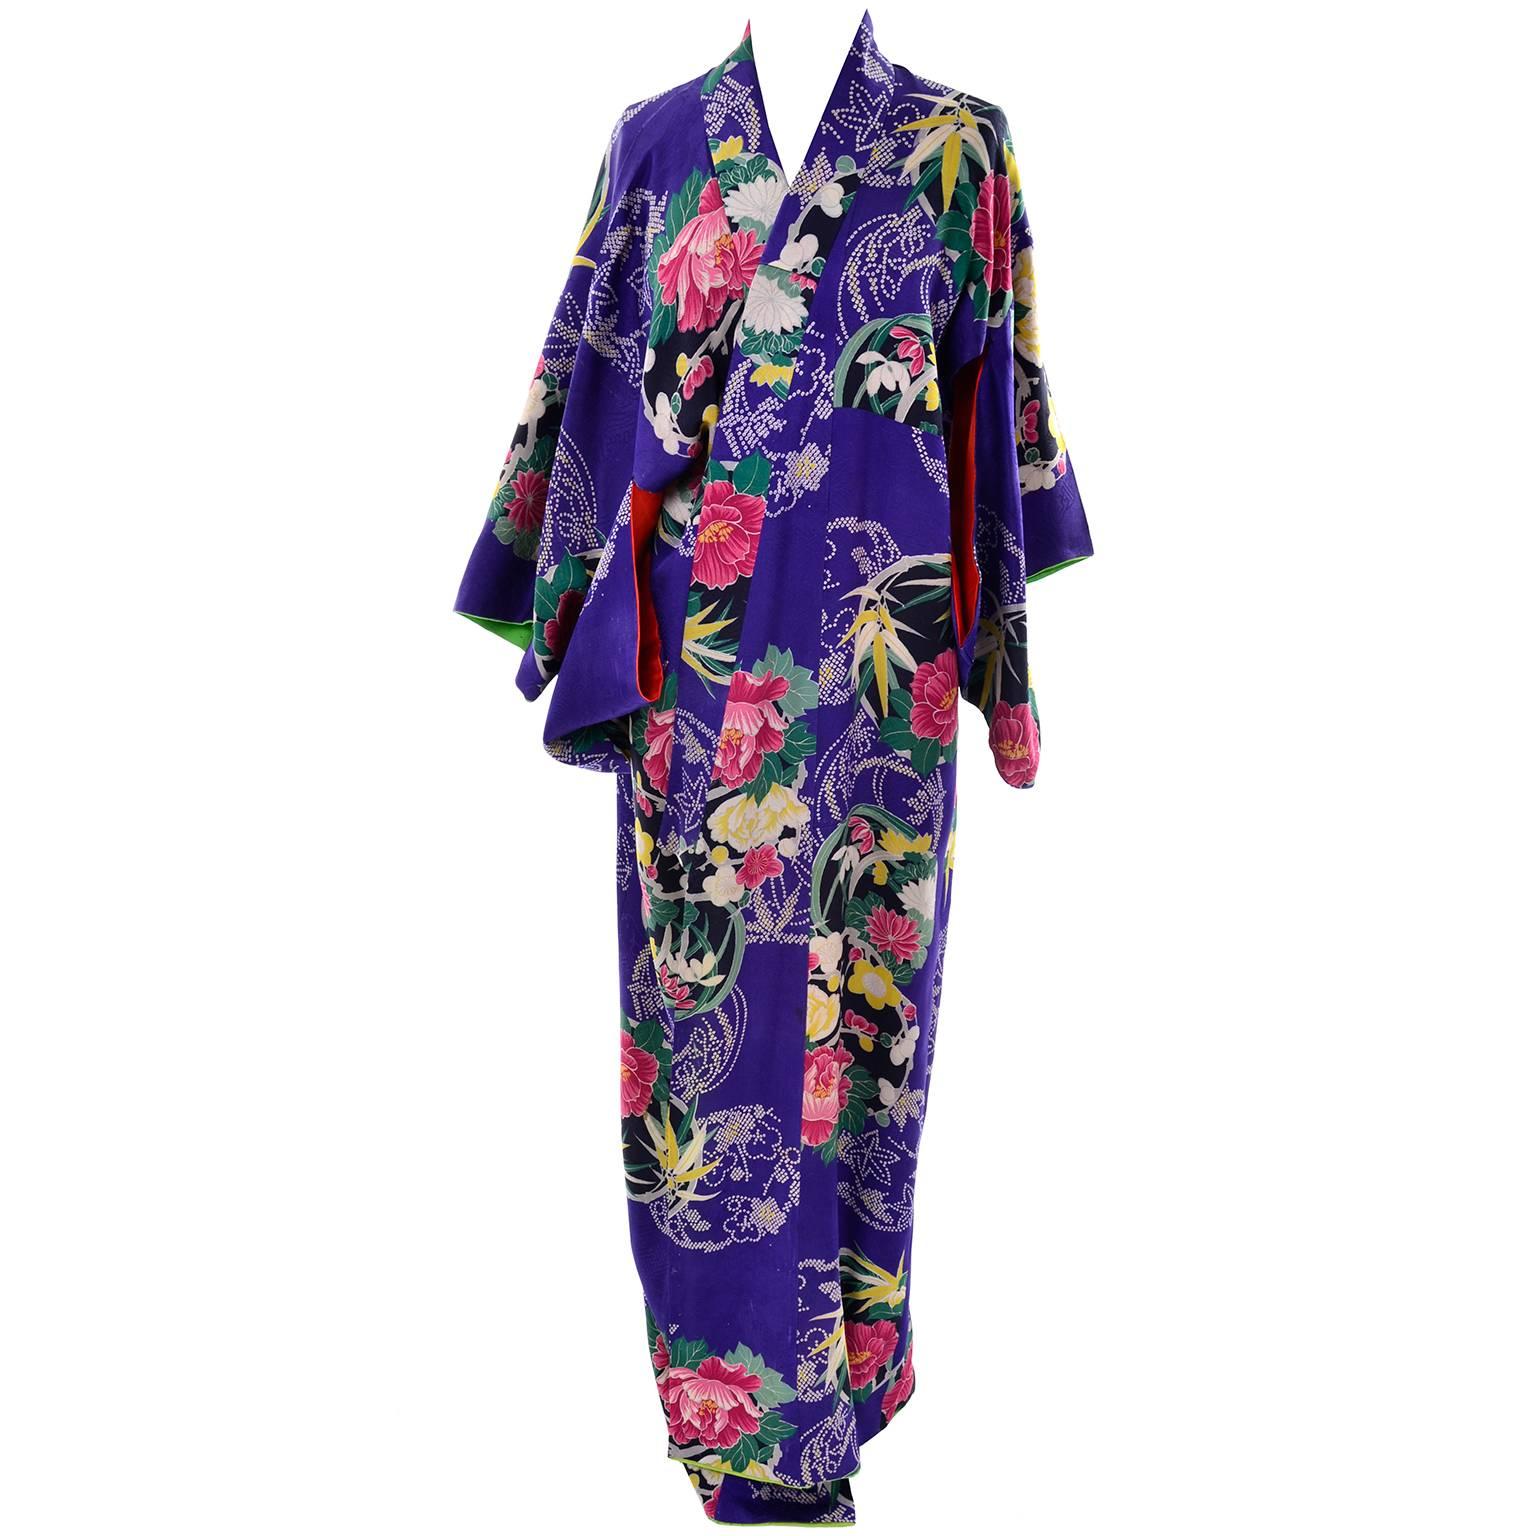 Ce magnifique kimono en soie fleurie bleu royal provient d'une collection de textiles et de vêtements asiatiques que nous avons acquise il y a quelque temps. Ce kimono présente de magnifiques fleurs et feuilles dans l'impression de la soie et une